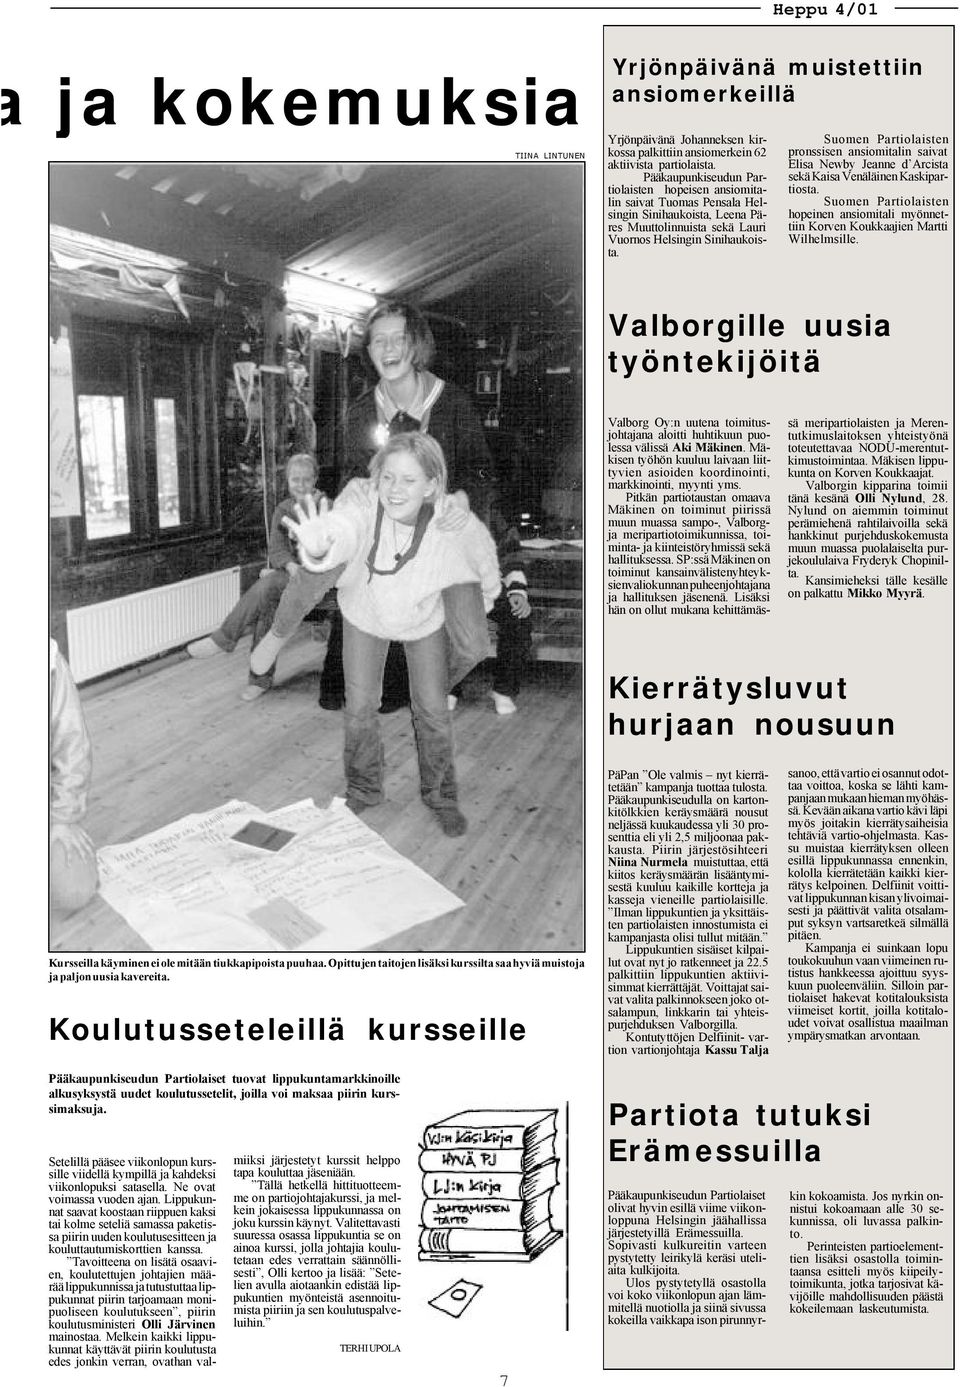 Suomen Partiolaisten pronssisen ansiomitalin saivat Elisa Newby Jeanne d Arcista sekä Kaisa Venäläinen Kaskipartiosta.